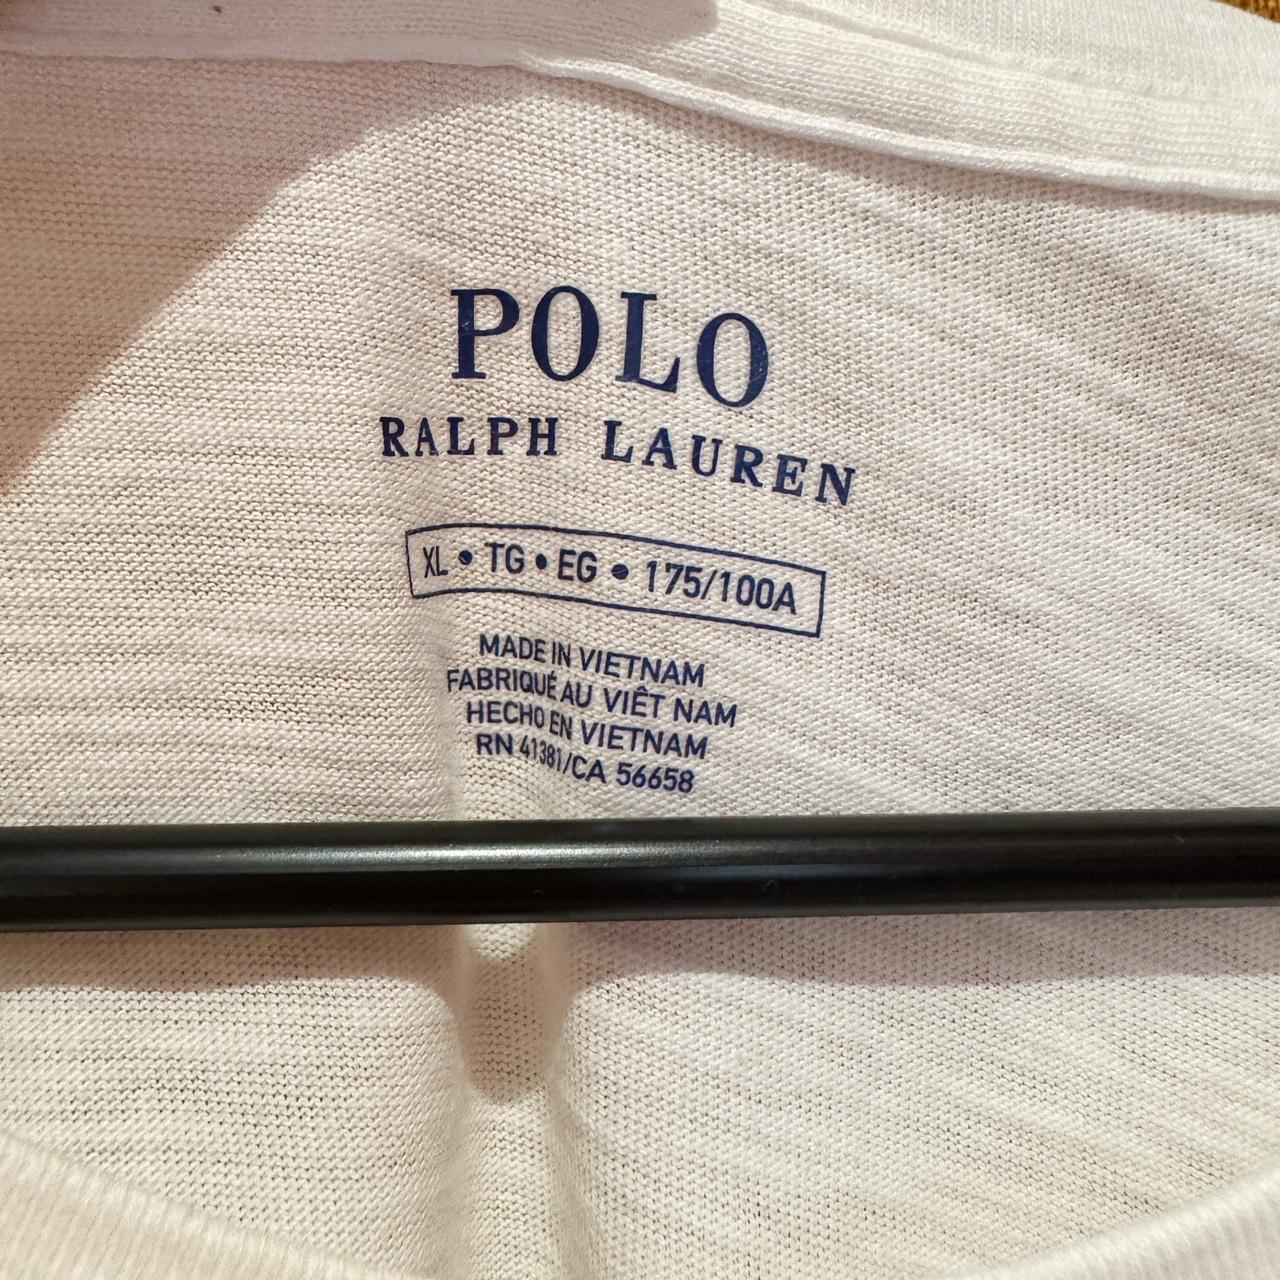 Polo Ralph Lauren women’s flower t-shirt. Women’s... - Depop